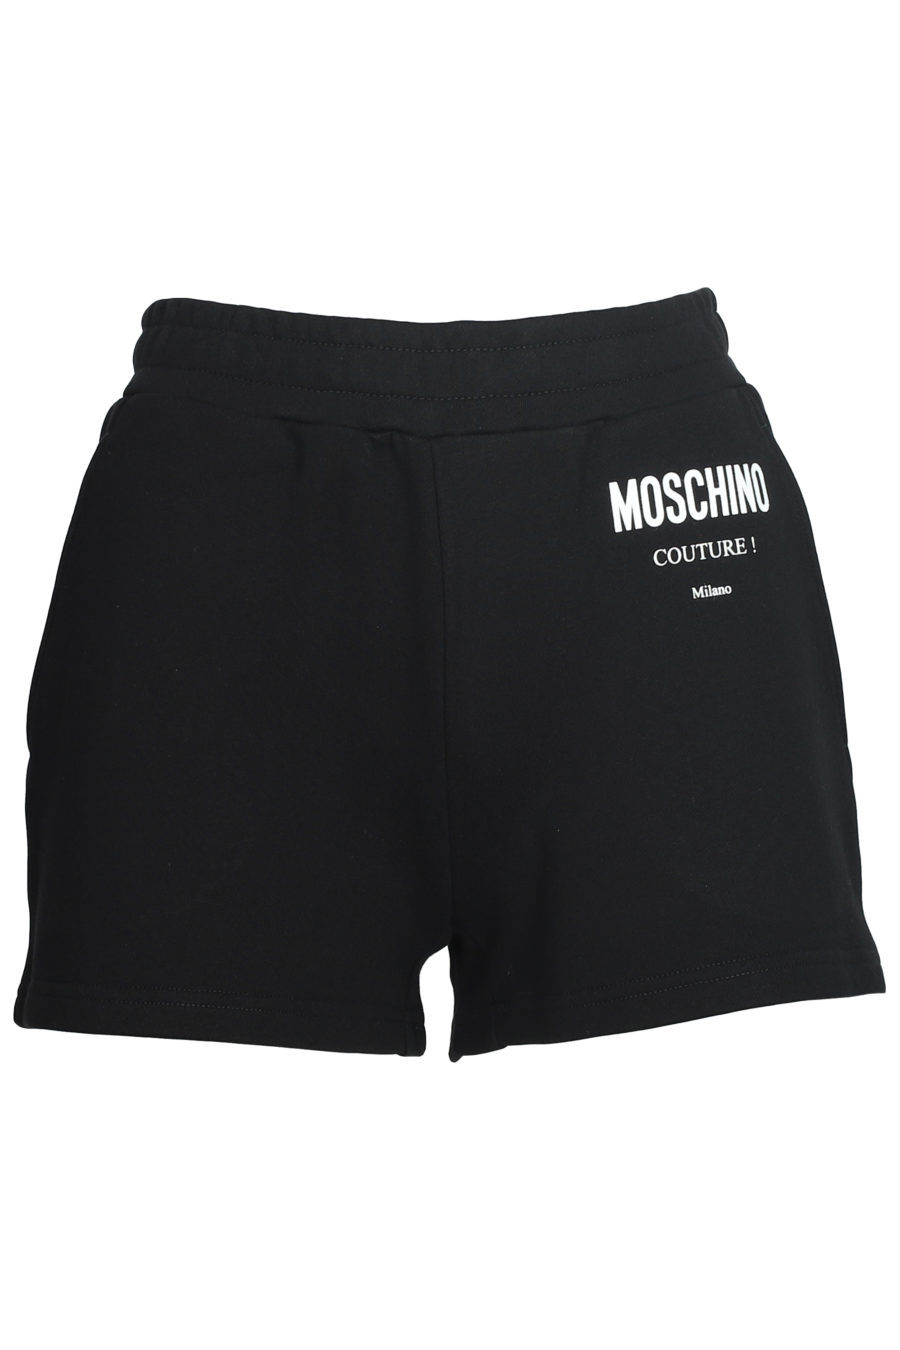 Pantalón corto negro con logo - IMG 5596